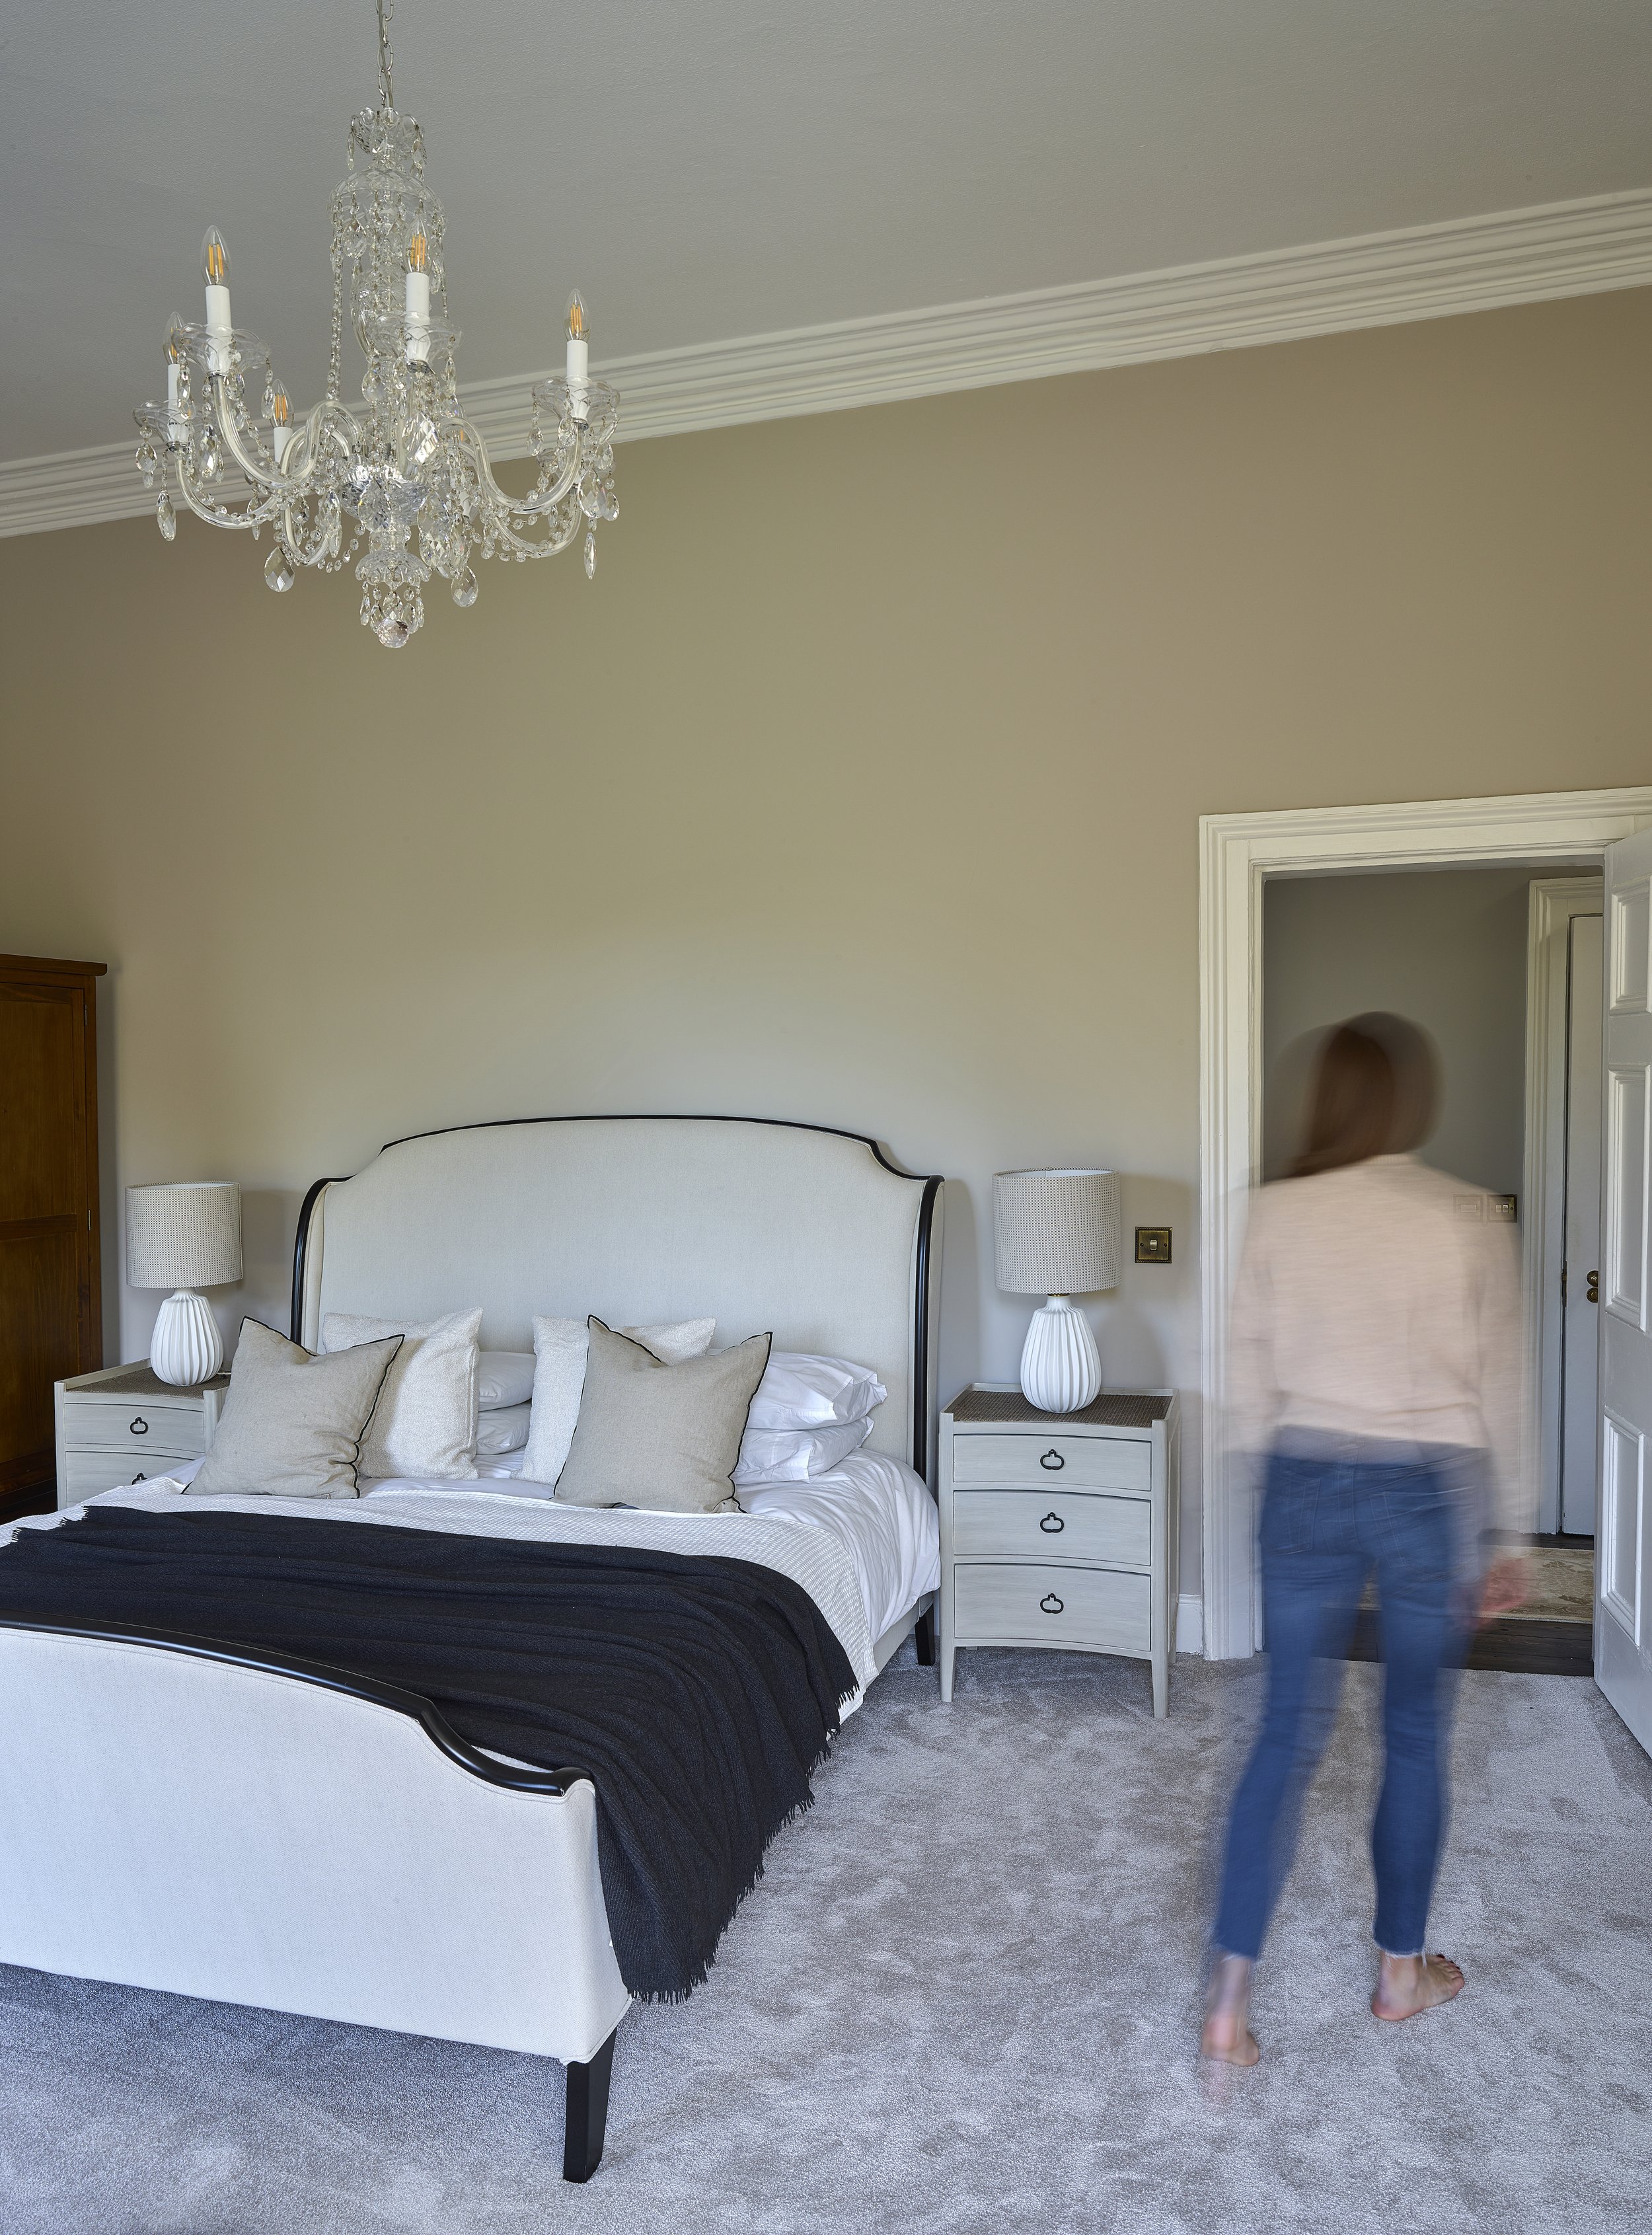 plush grey carpet in master bedroom